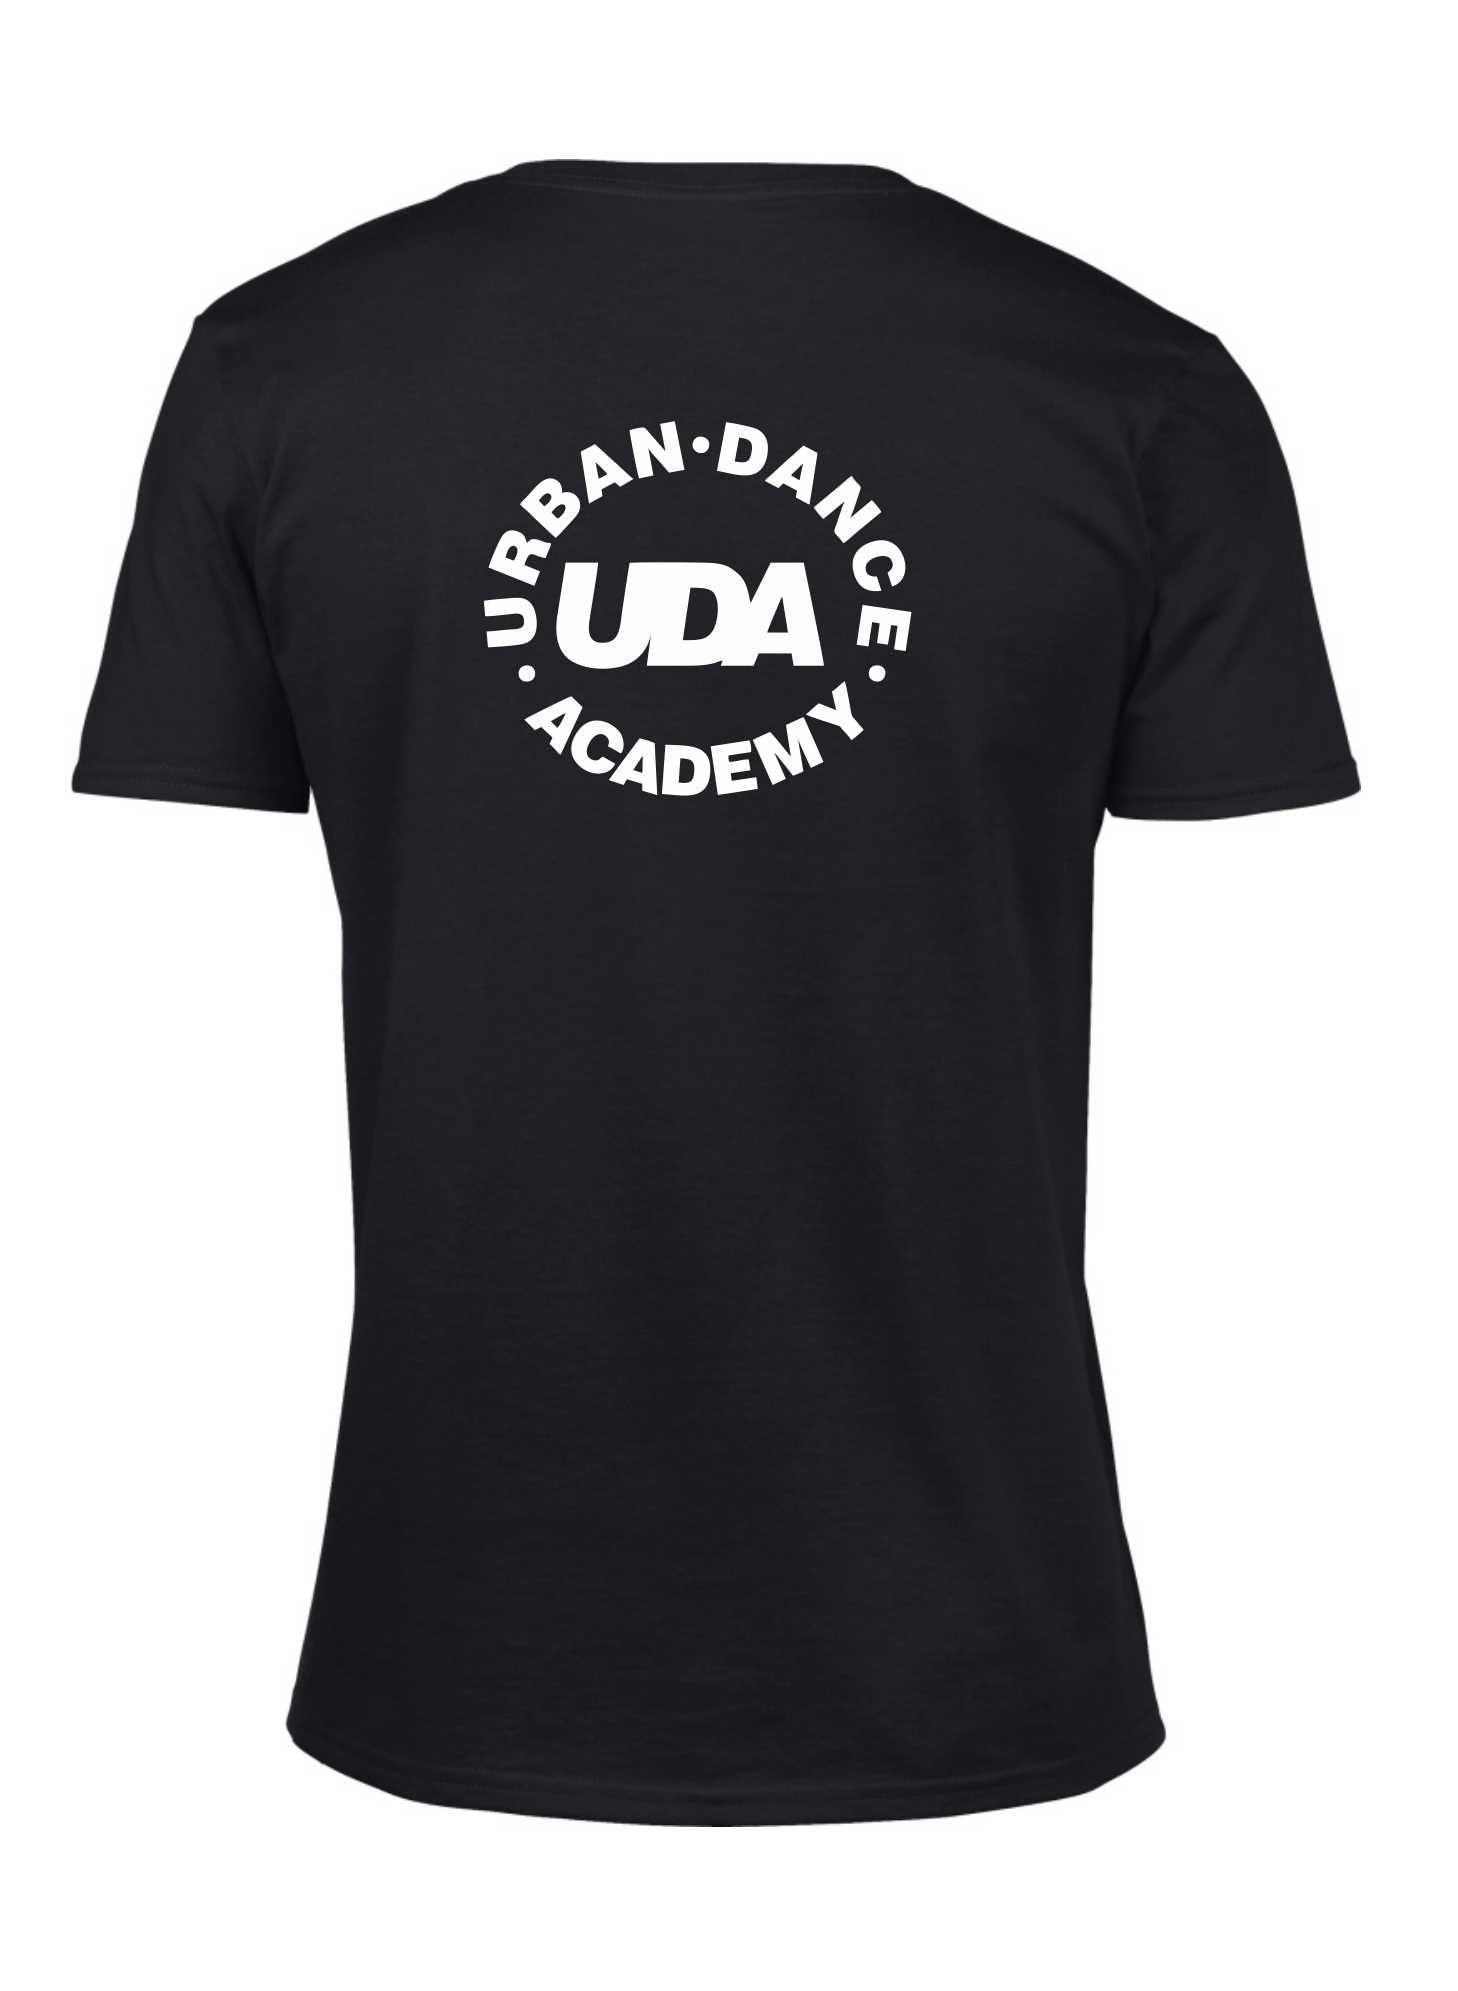 LIMITED EDITION: UDA – Unisex T-Shirt (Black & White)